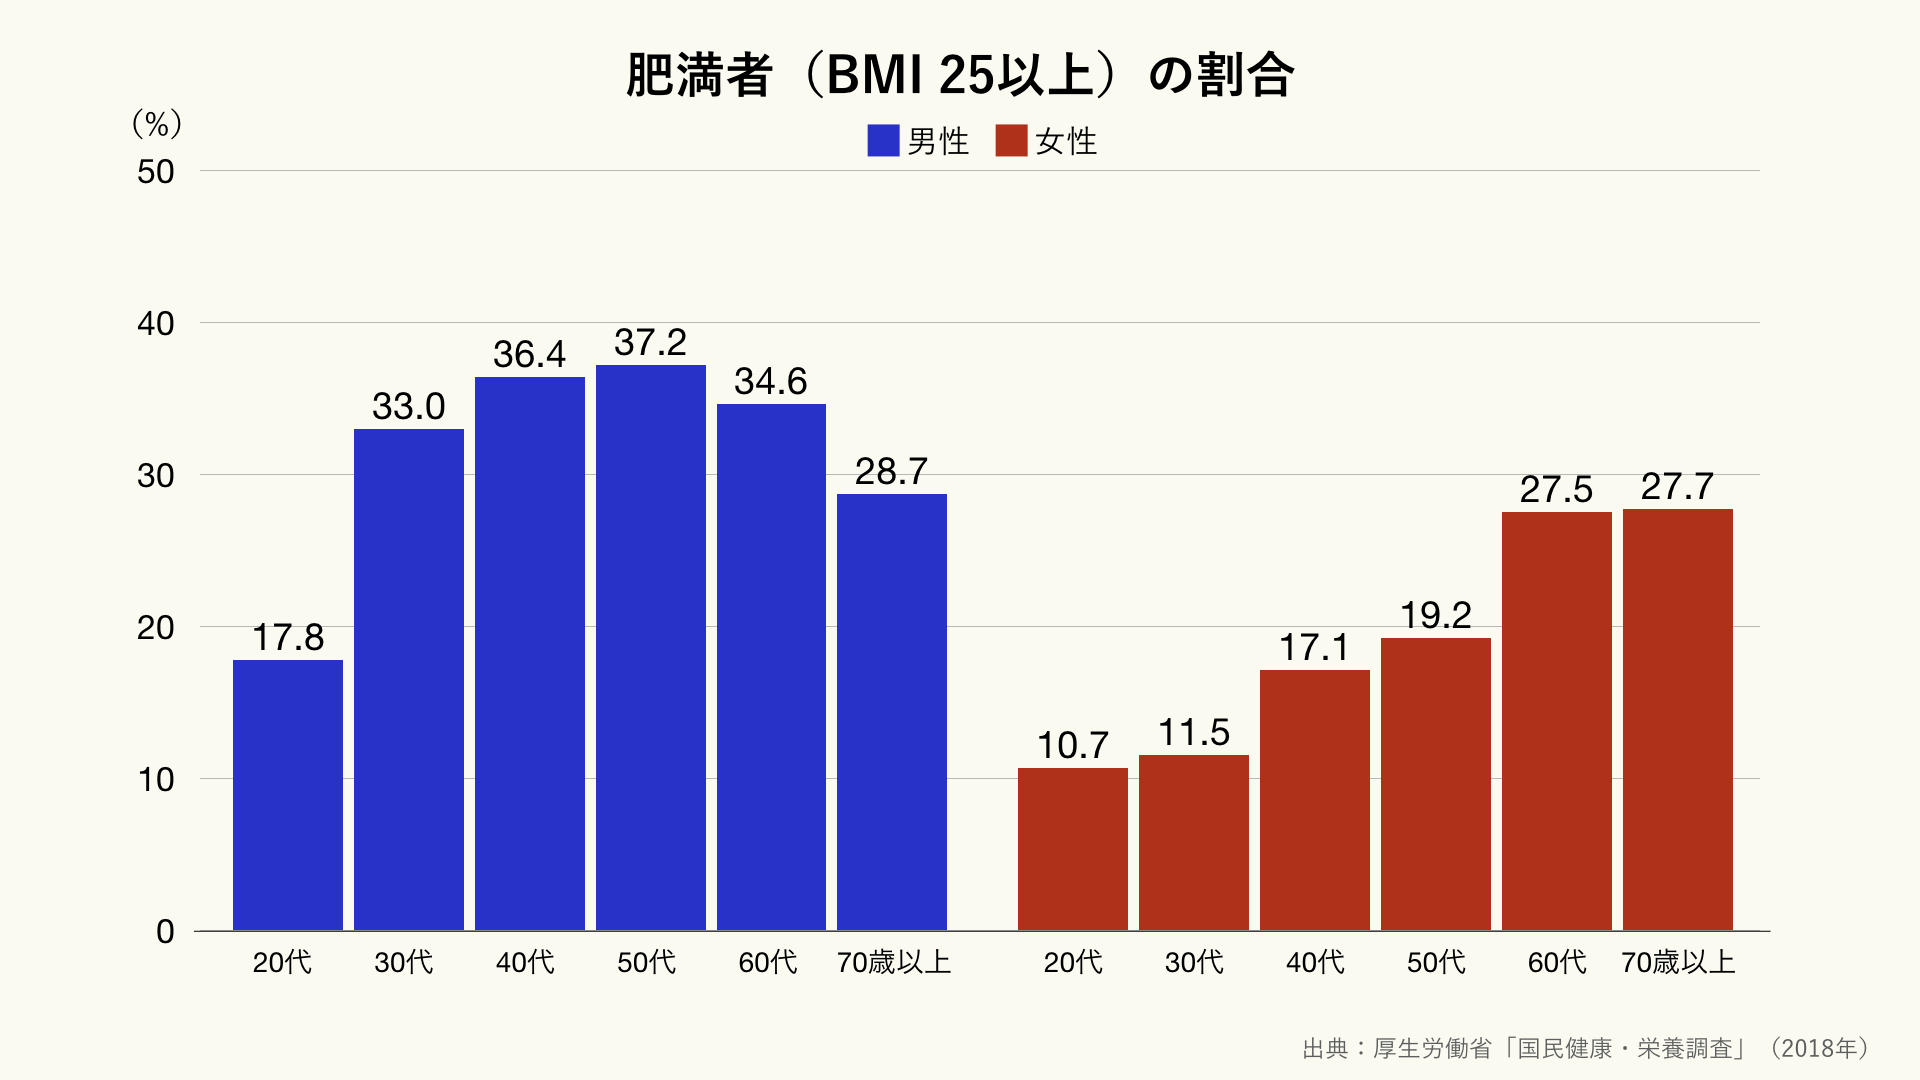 日本の肥満者 Bmi25以上 の割合のグラフ グラフストック